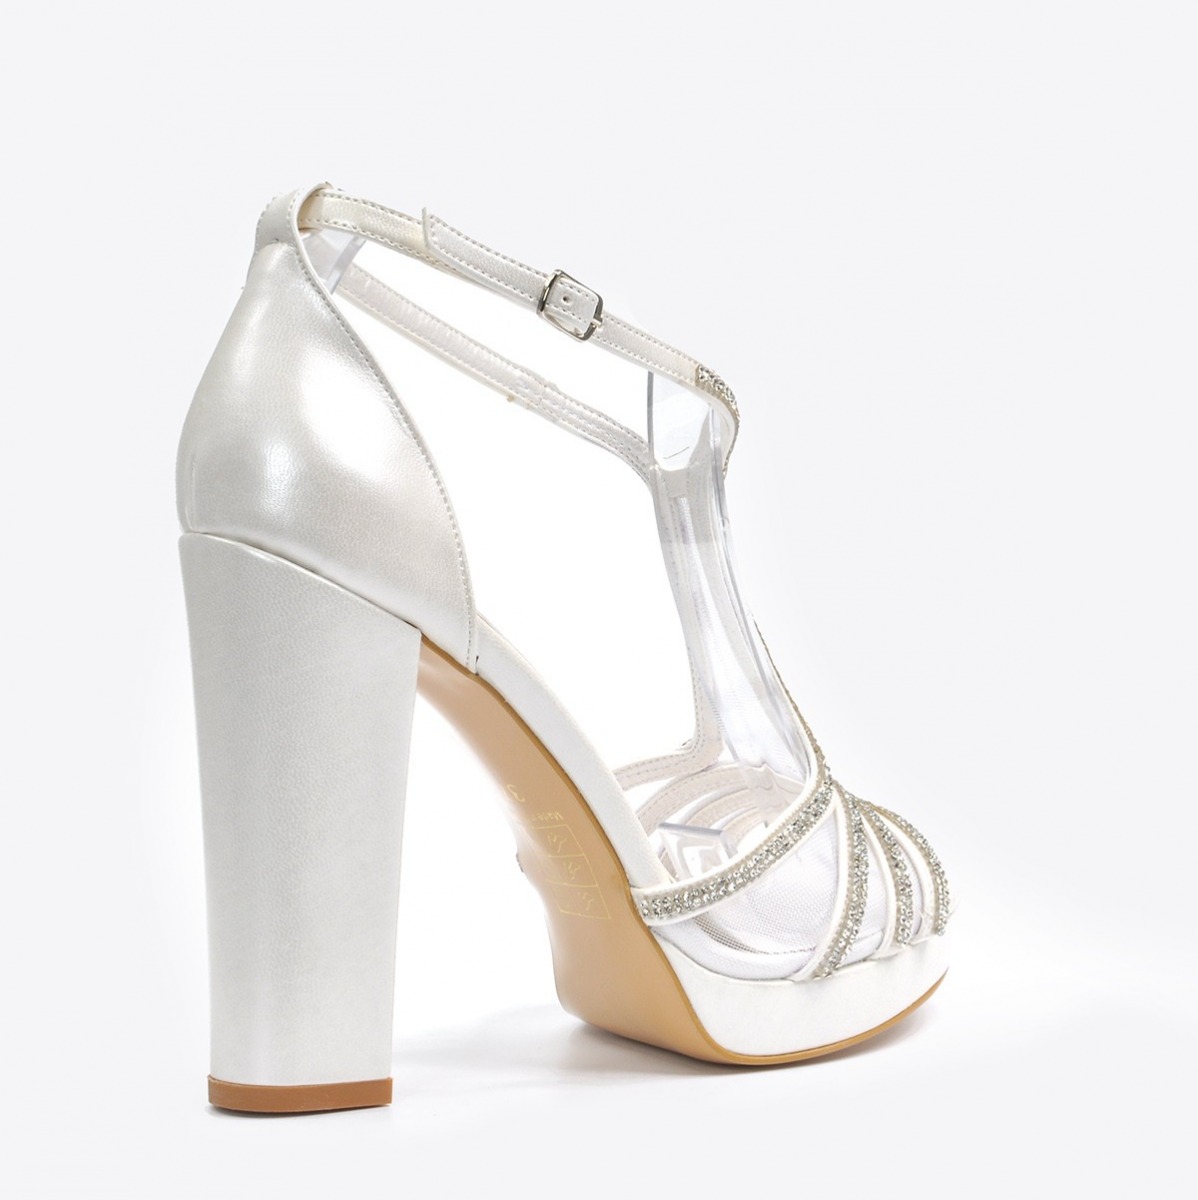 Flo Kadın Sedef Klasik Topuklu Ayakkabı VZN20-182Y. 4